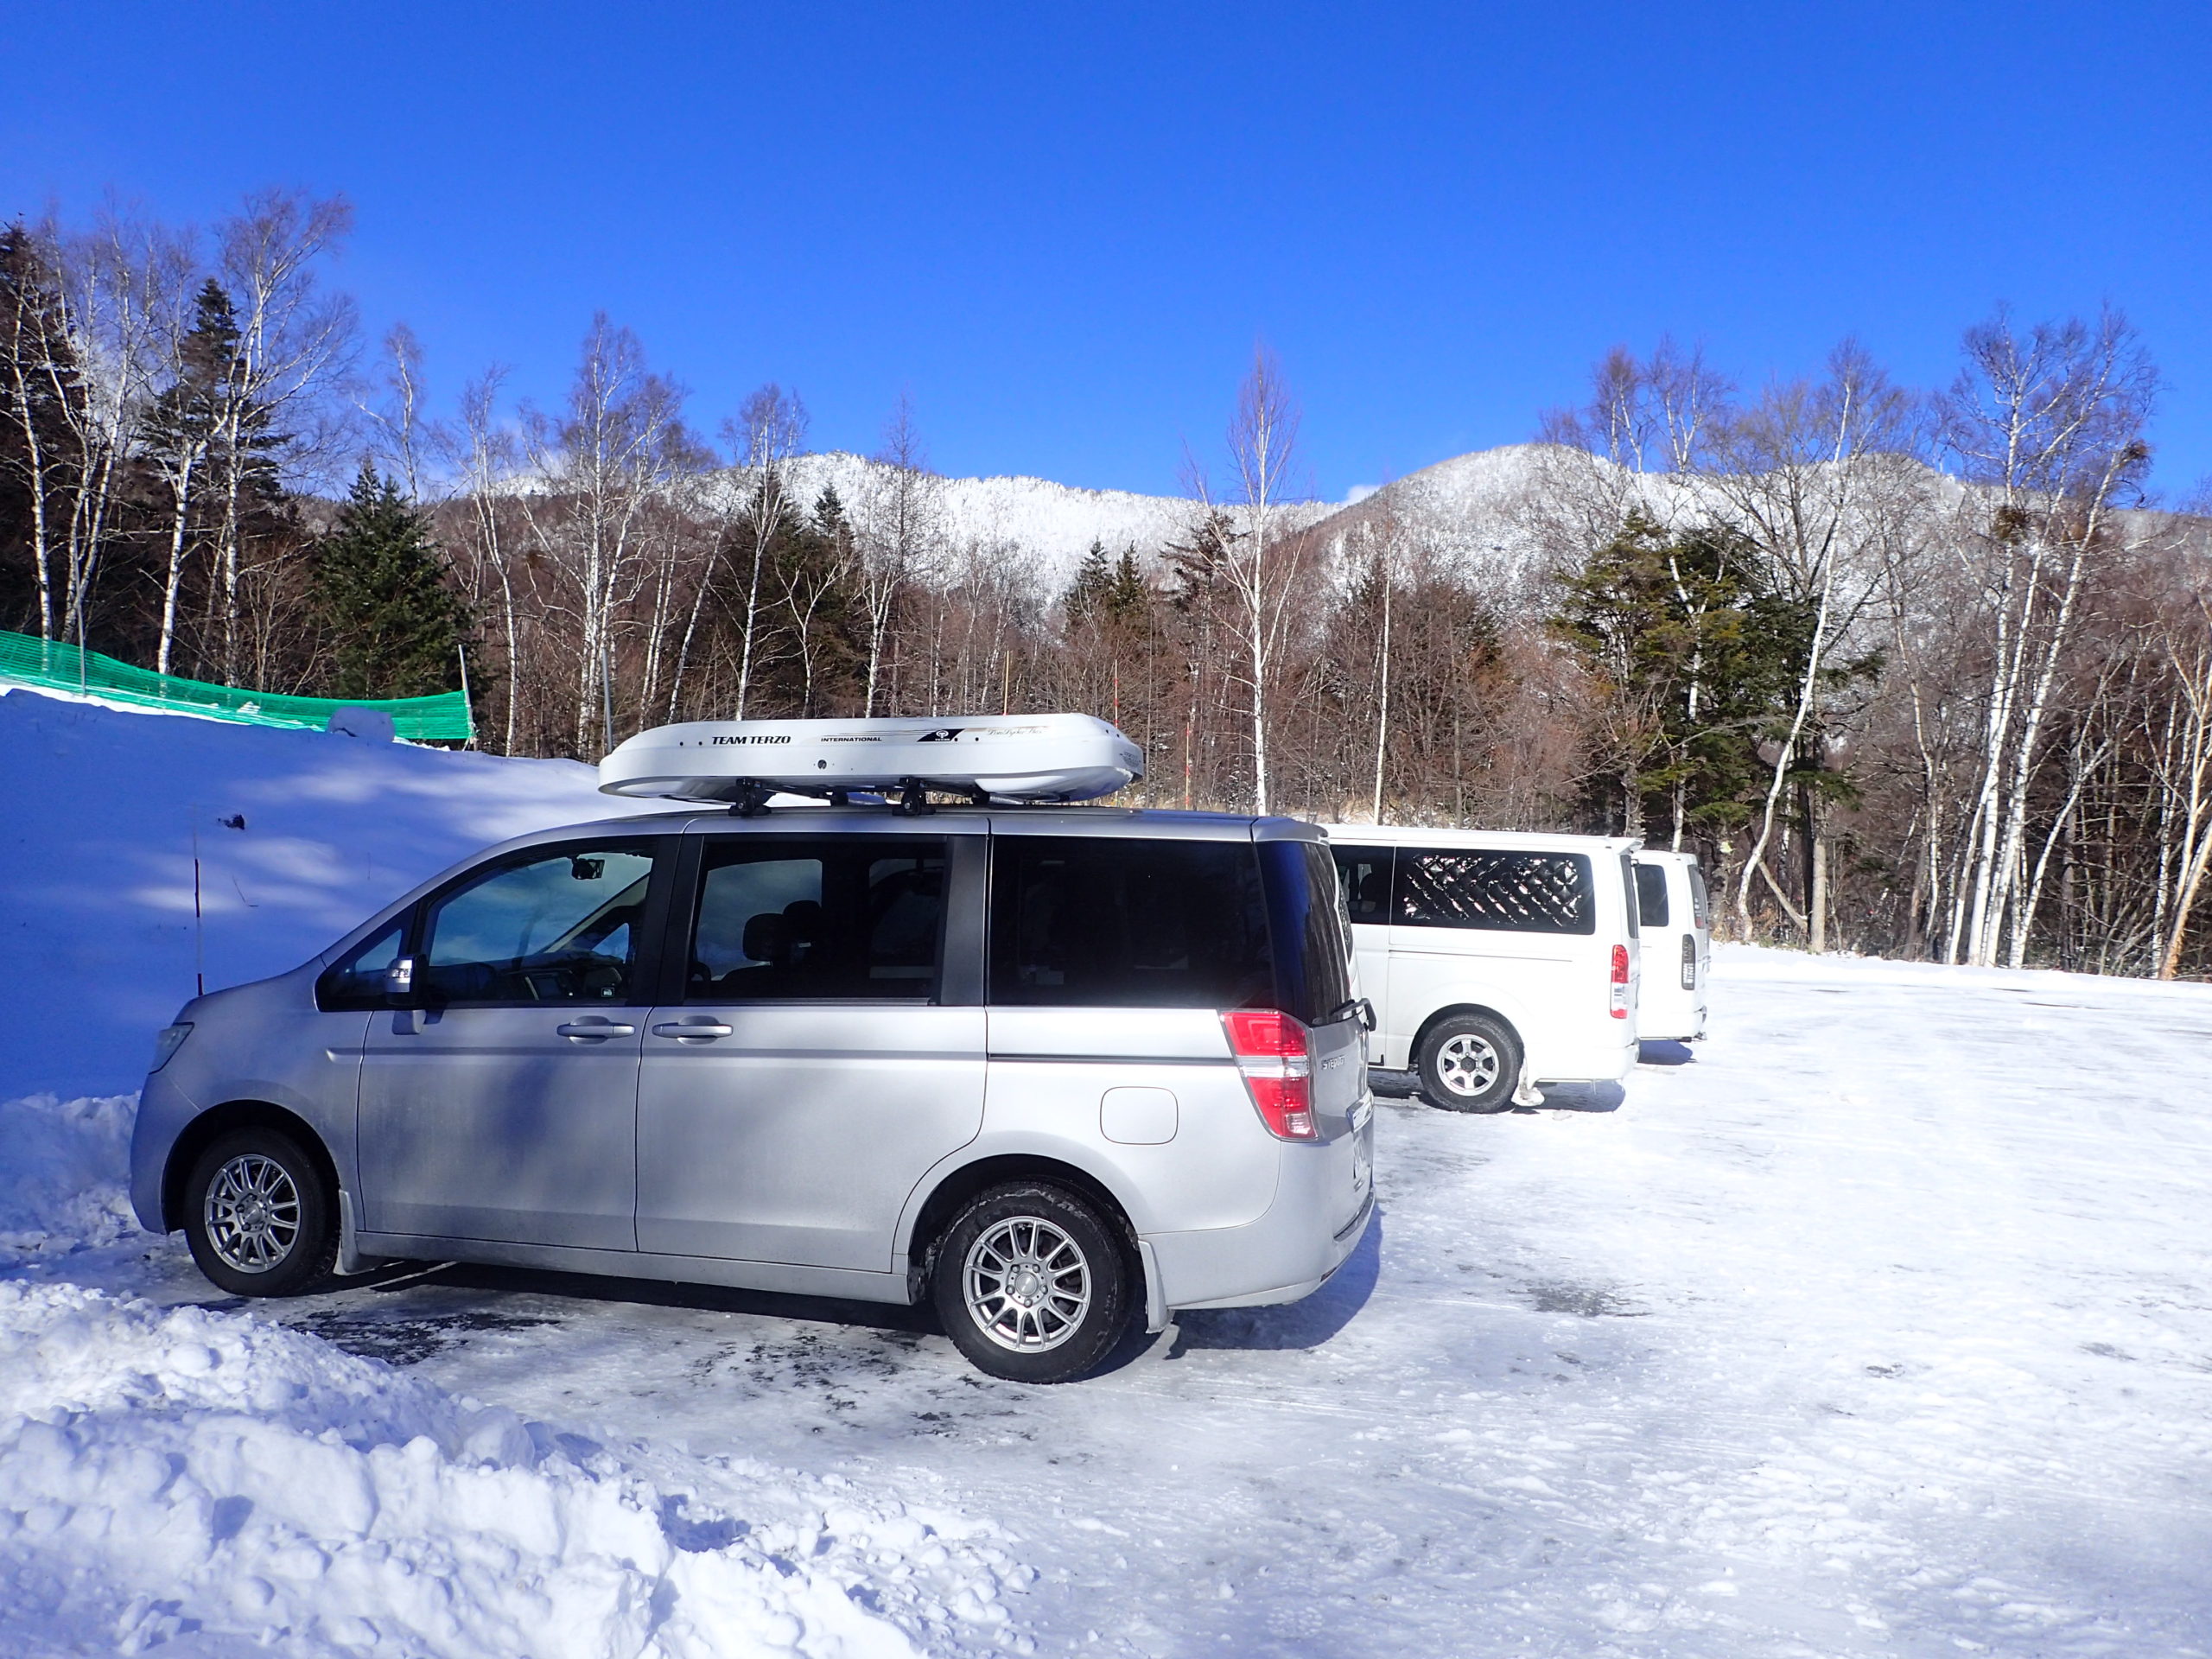 登山口駐車場などで車が雪でスタックしてしまったときの自力での脱出方法 山旅の記録 Record Of Mountain Journey